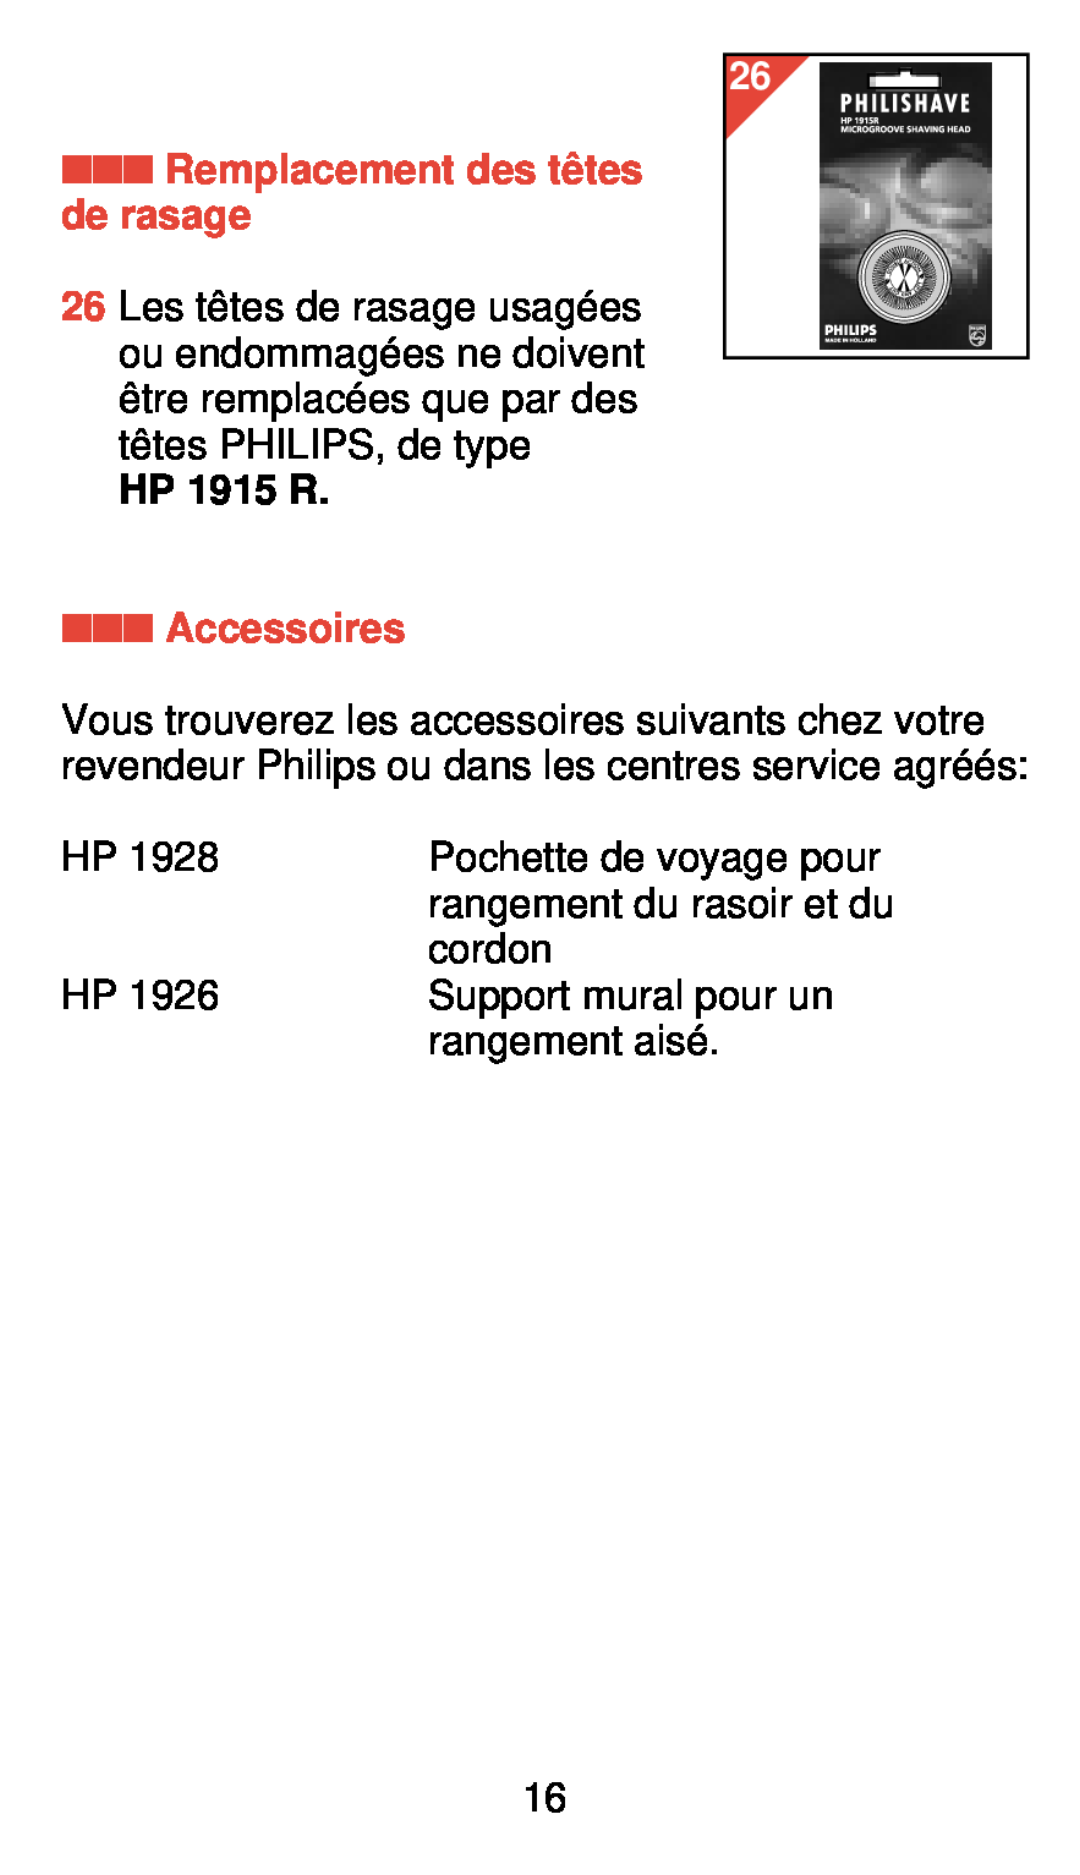 Philips 775 manual Remplacement des tê tes de rasage, Accessoires, HP 1915 R 